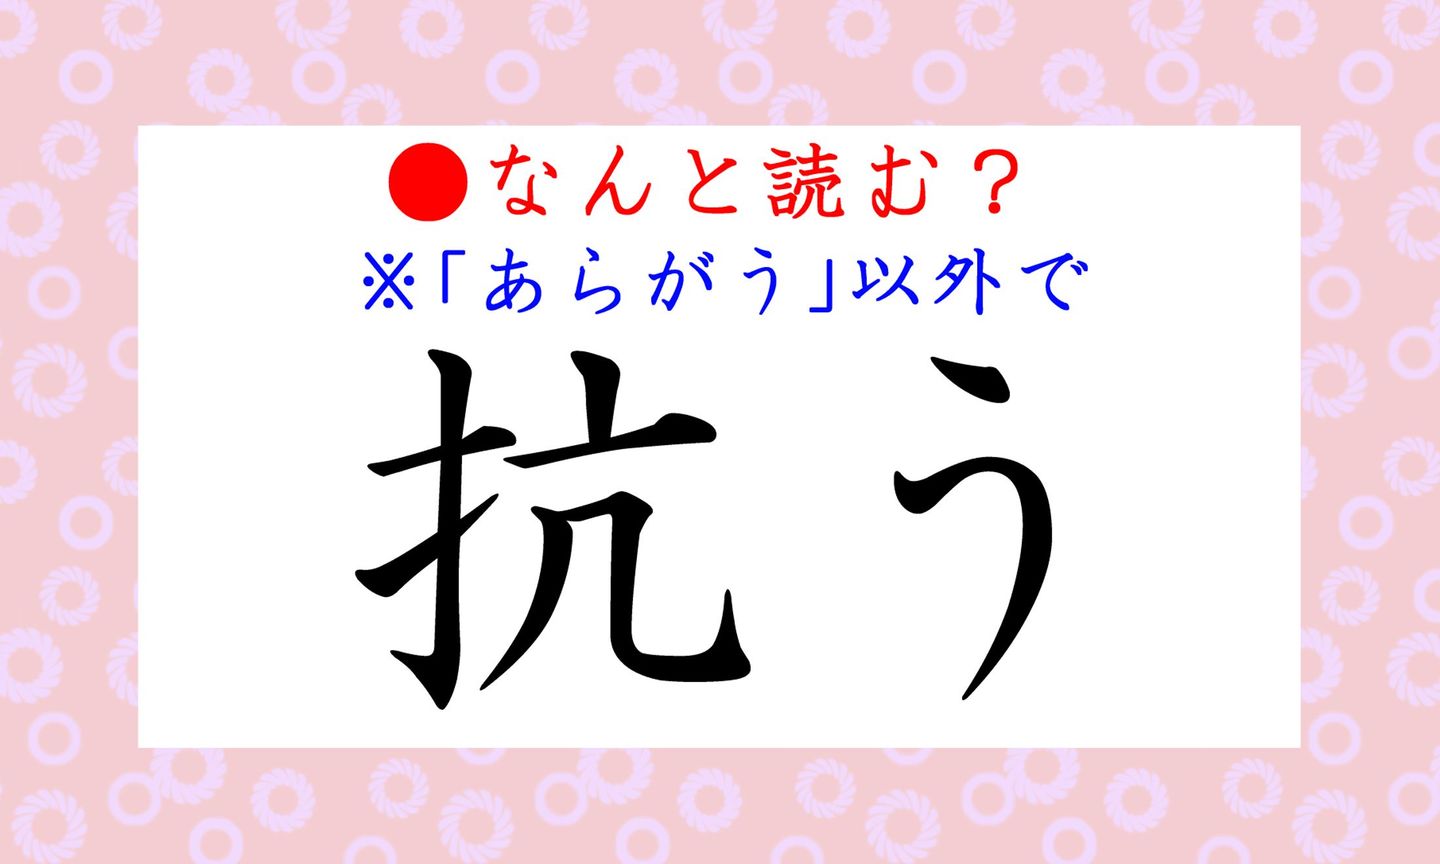 日本語クイズ出題画像　難読漢字「抗う」　※「あらがう」以外で